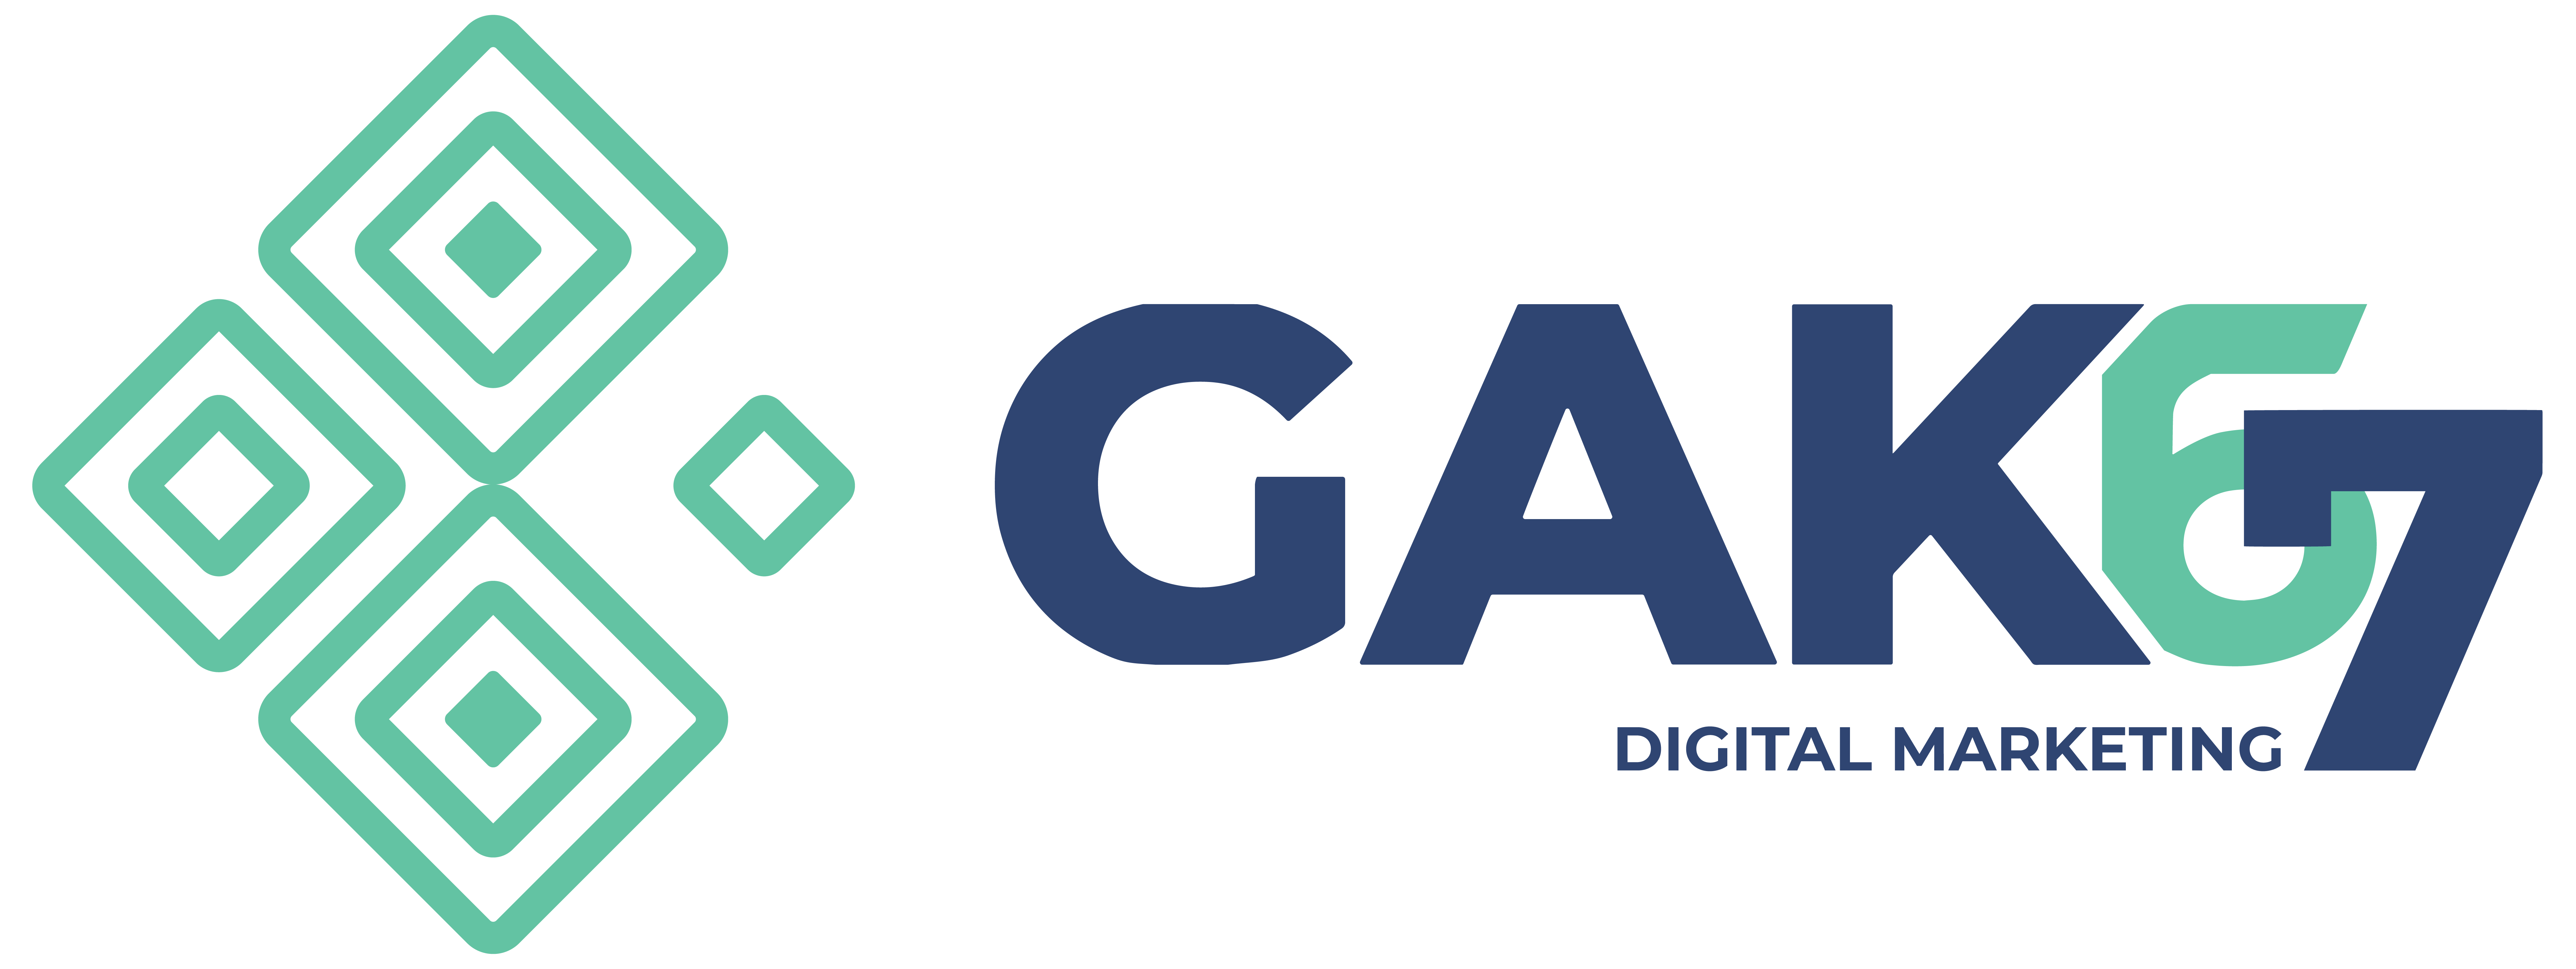 GAK67 Digital Marketing